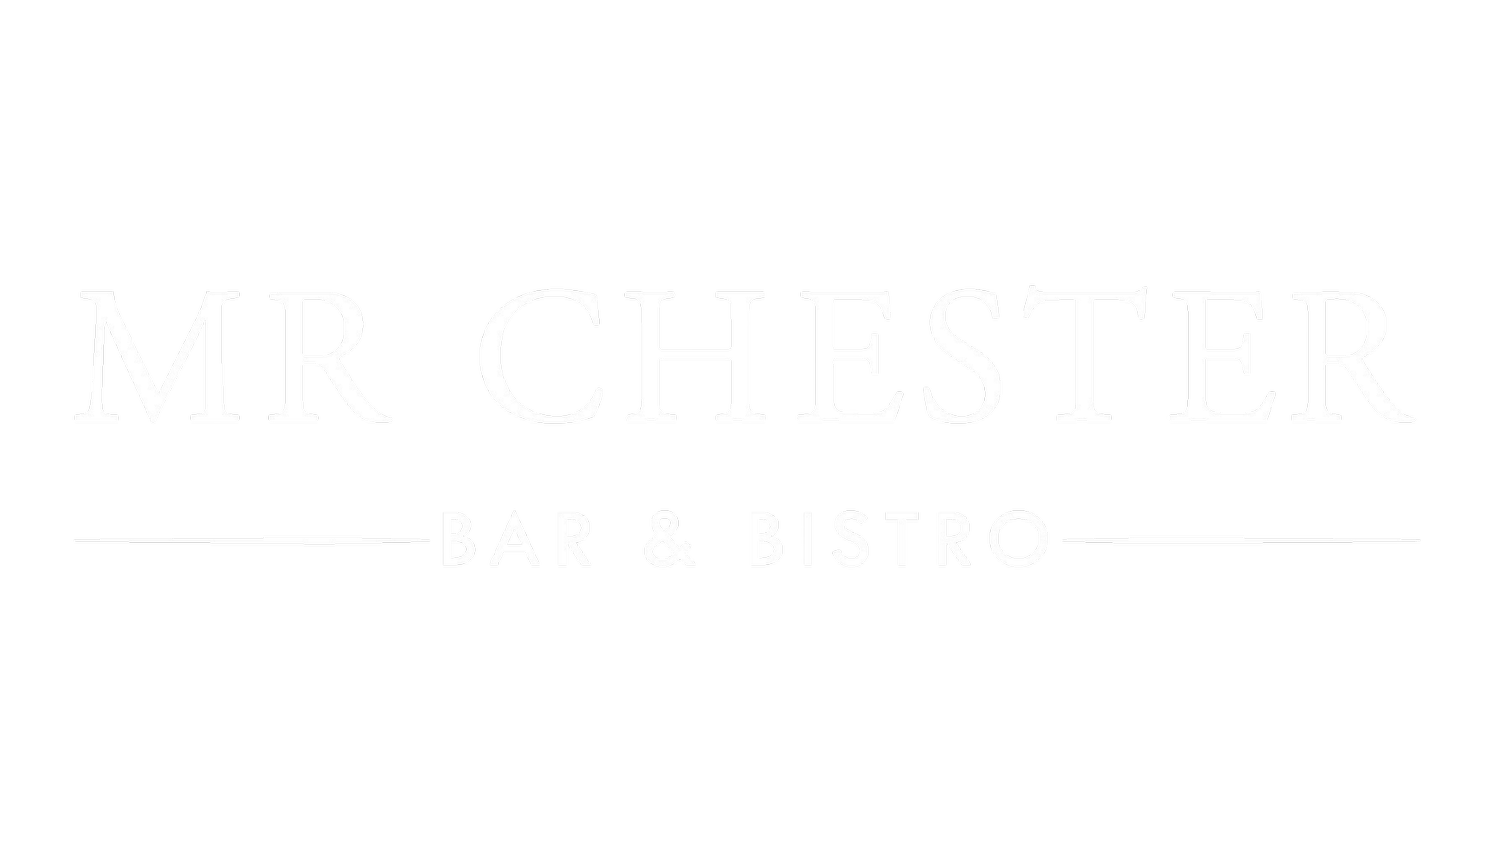 Mr Chester Wine Bar & Bistro